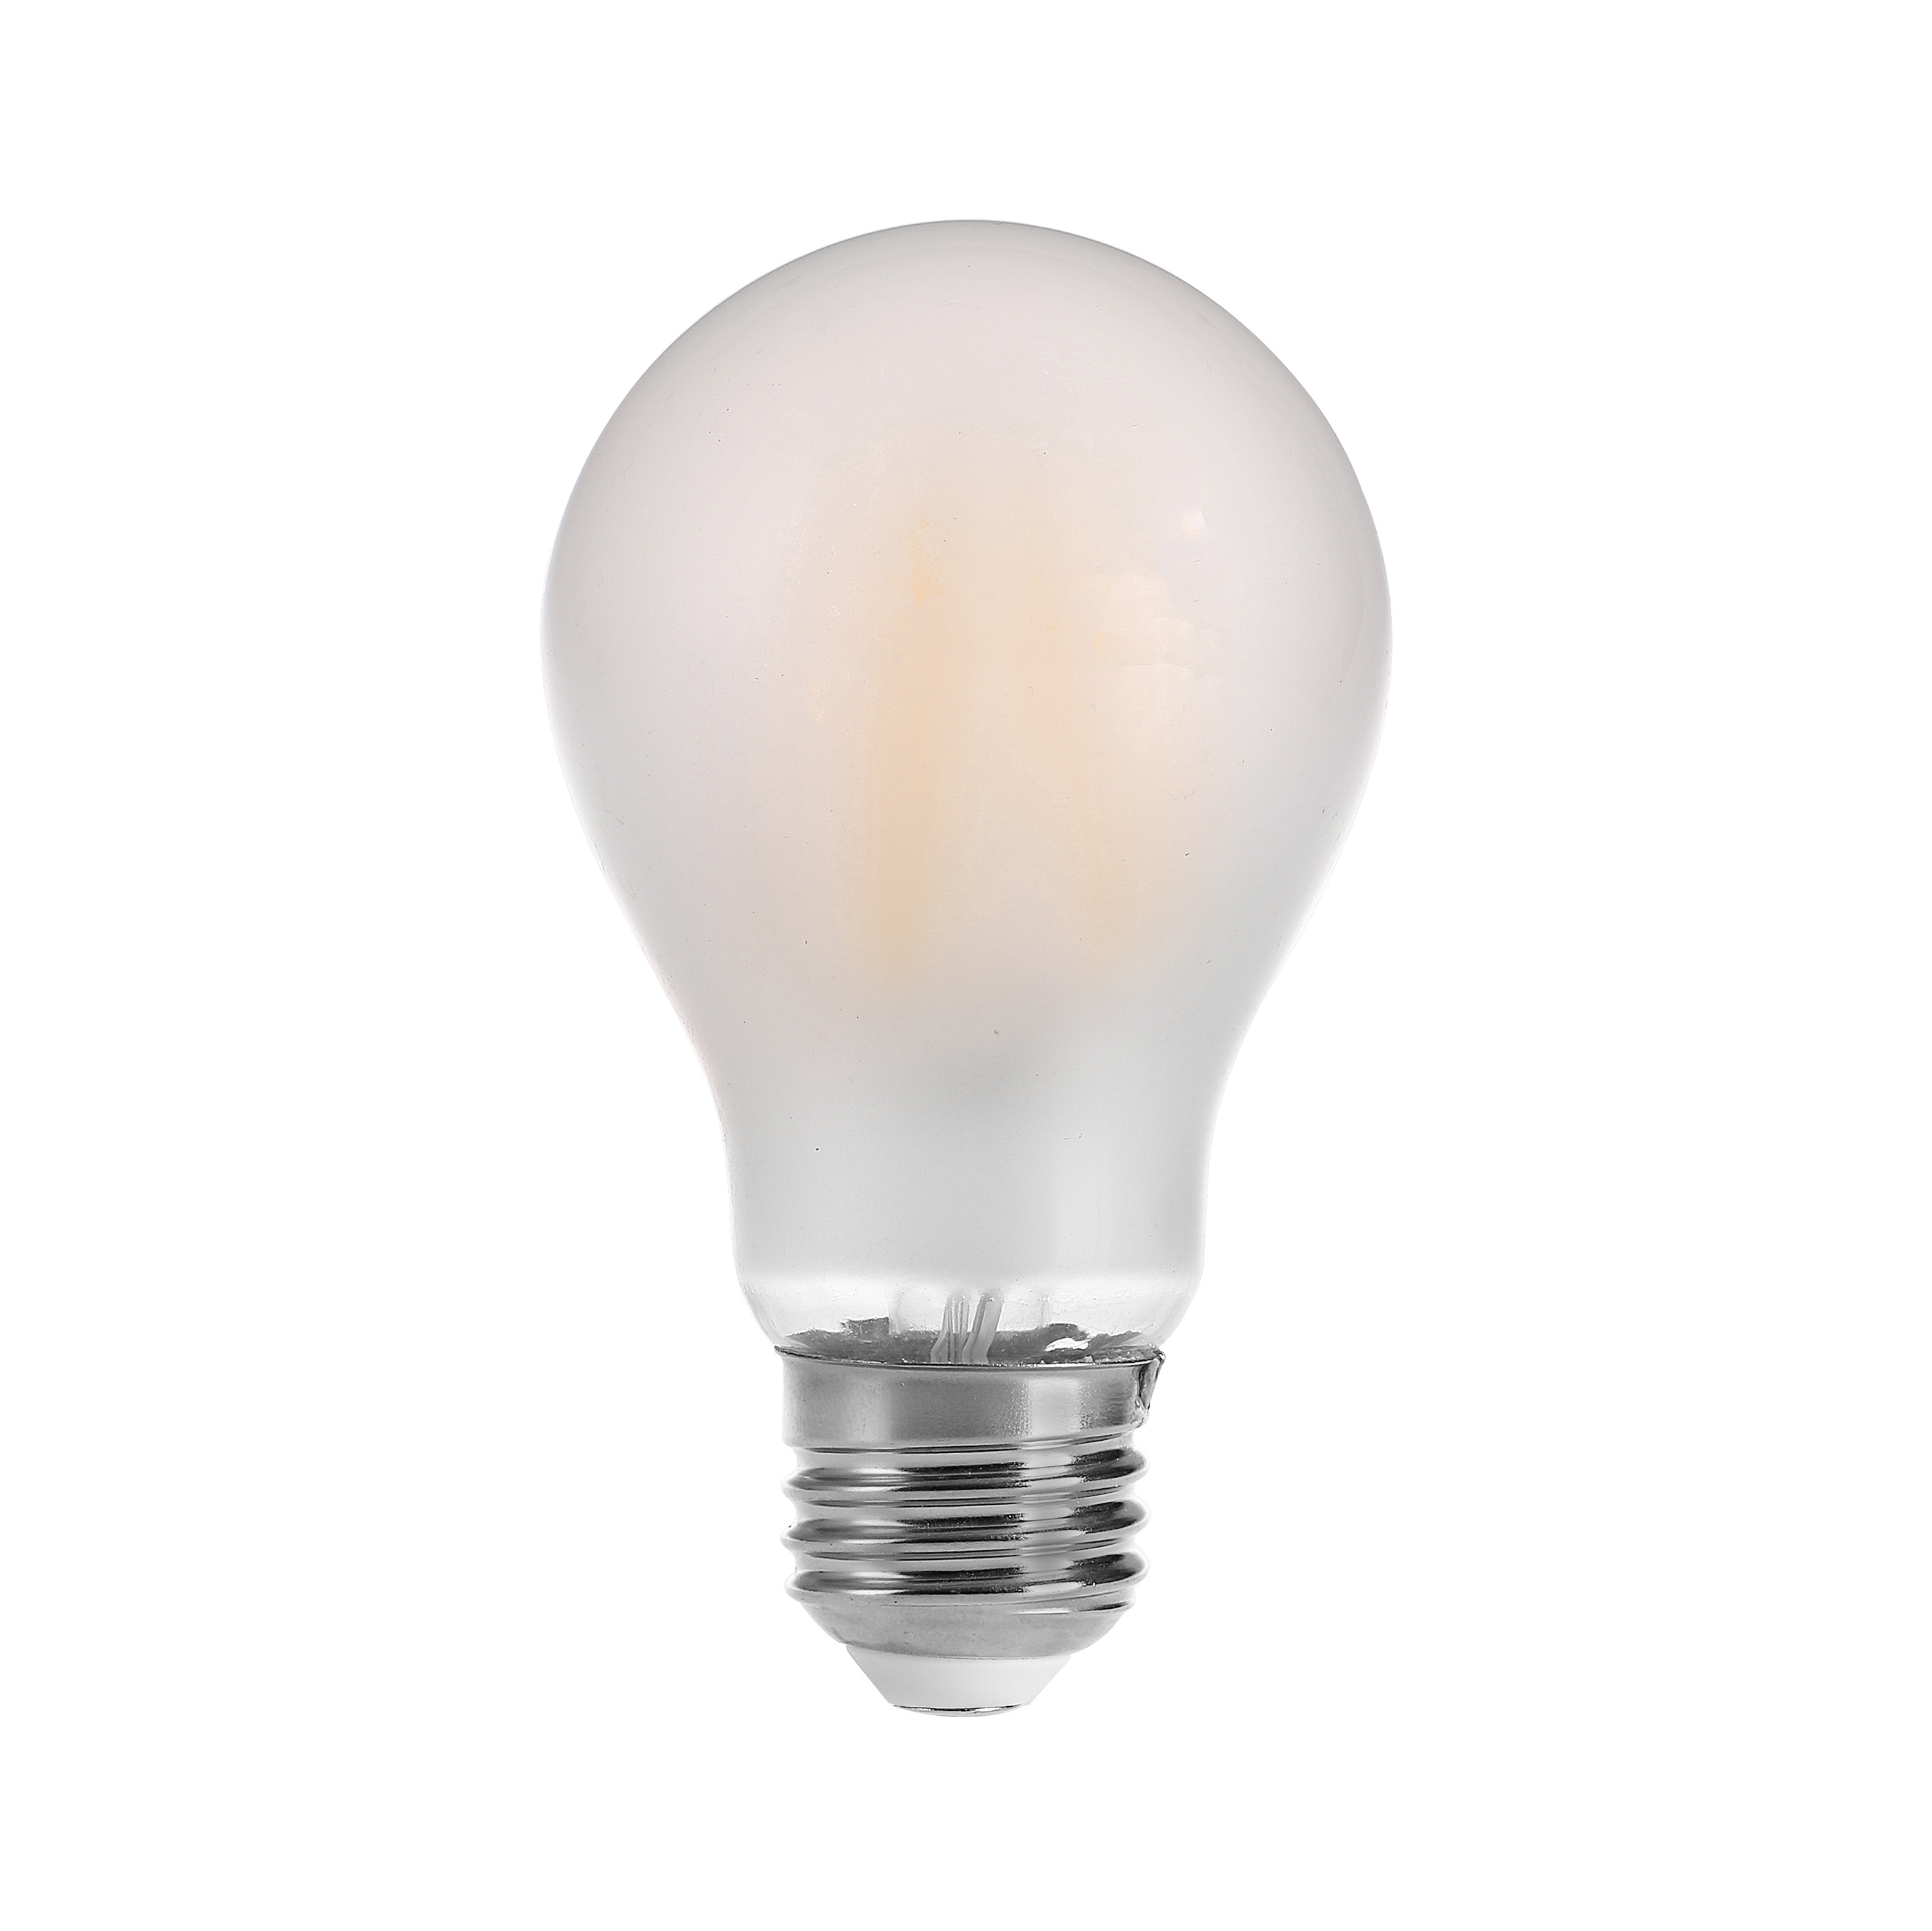 Żarówki LED z oryginalnym żarnikiem energooszczędnym, żarówka LED z żarowym ściemniaczem, żarówka LED 360 stopni kątowa